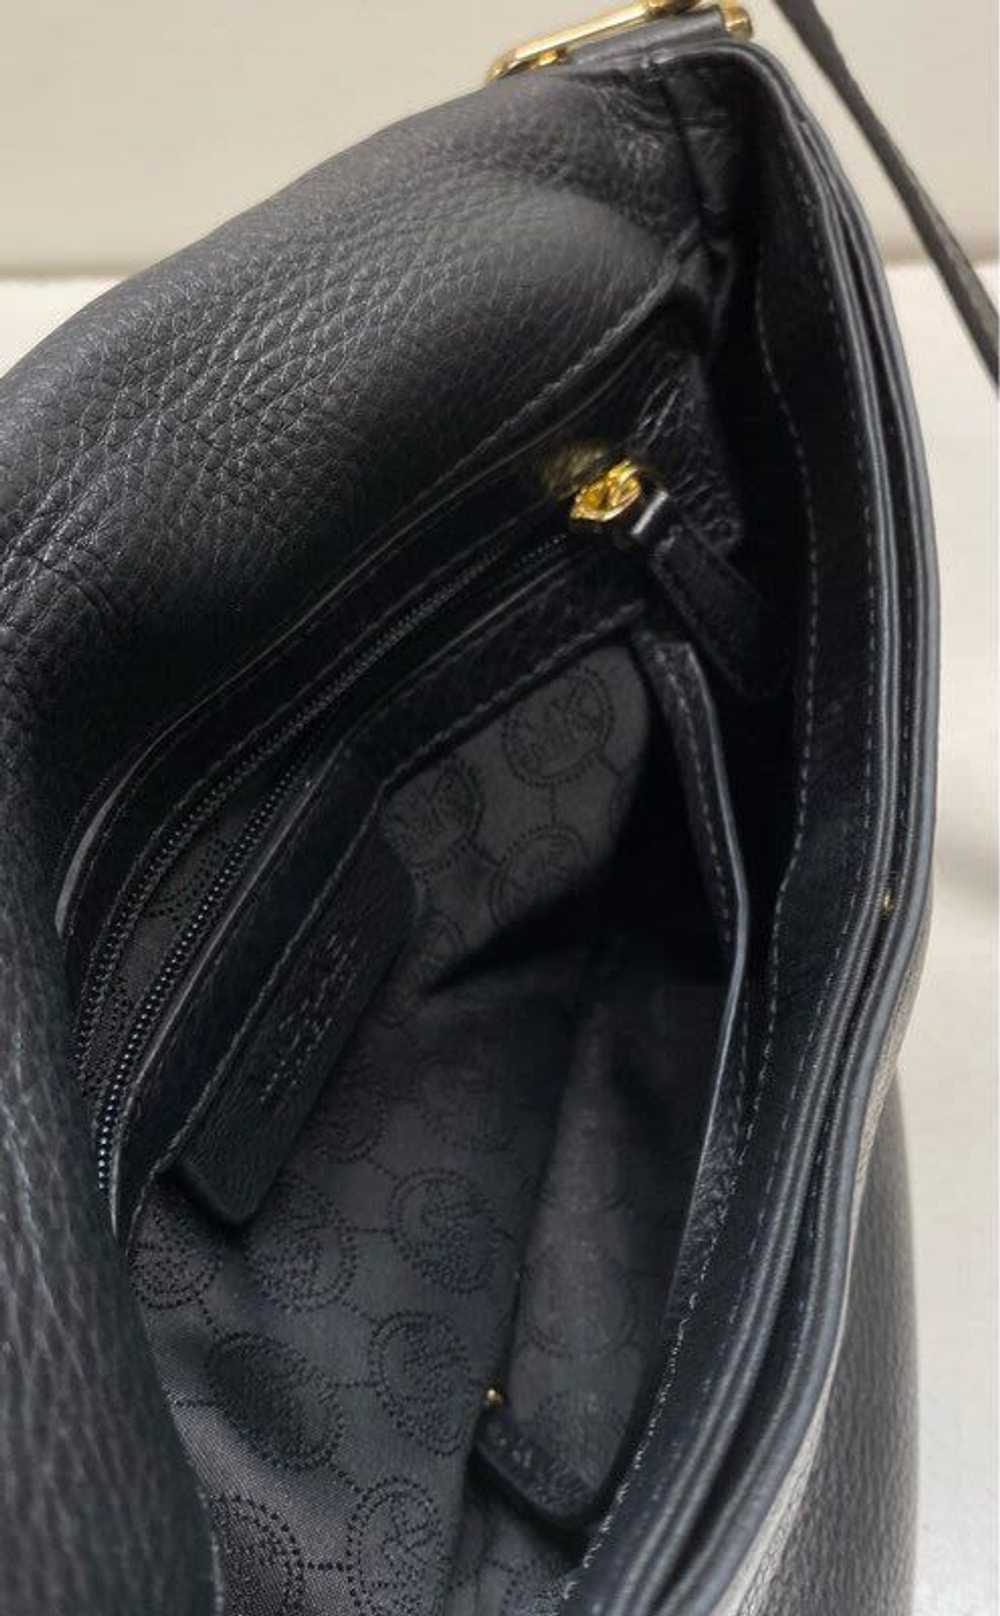 Michael Kors Leather Pebbled Shoulder Bag Black - image 5